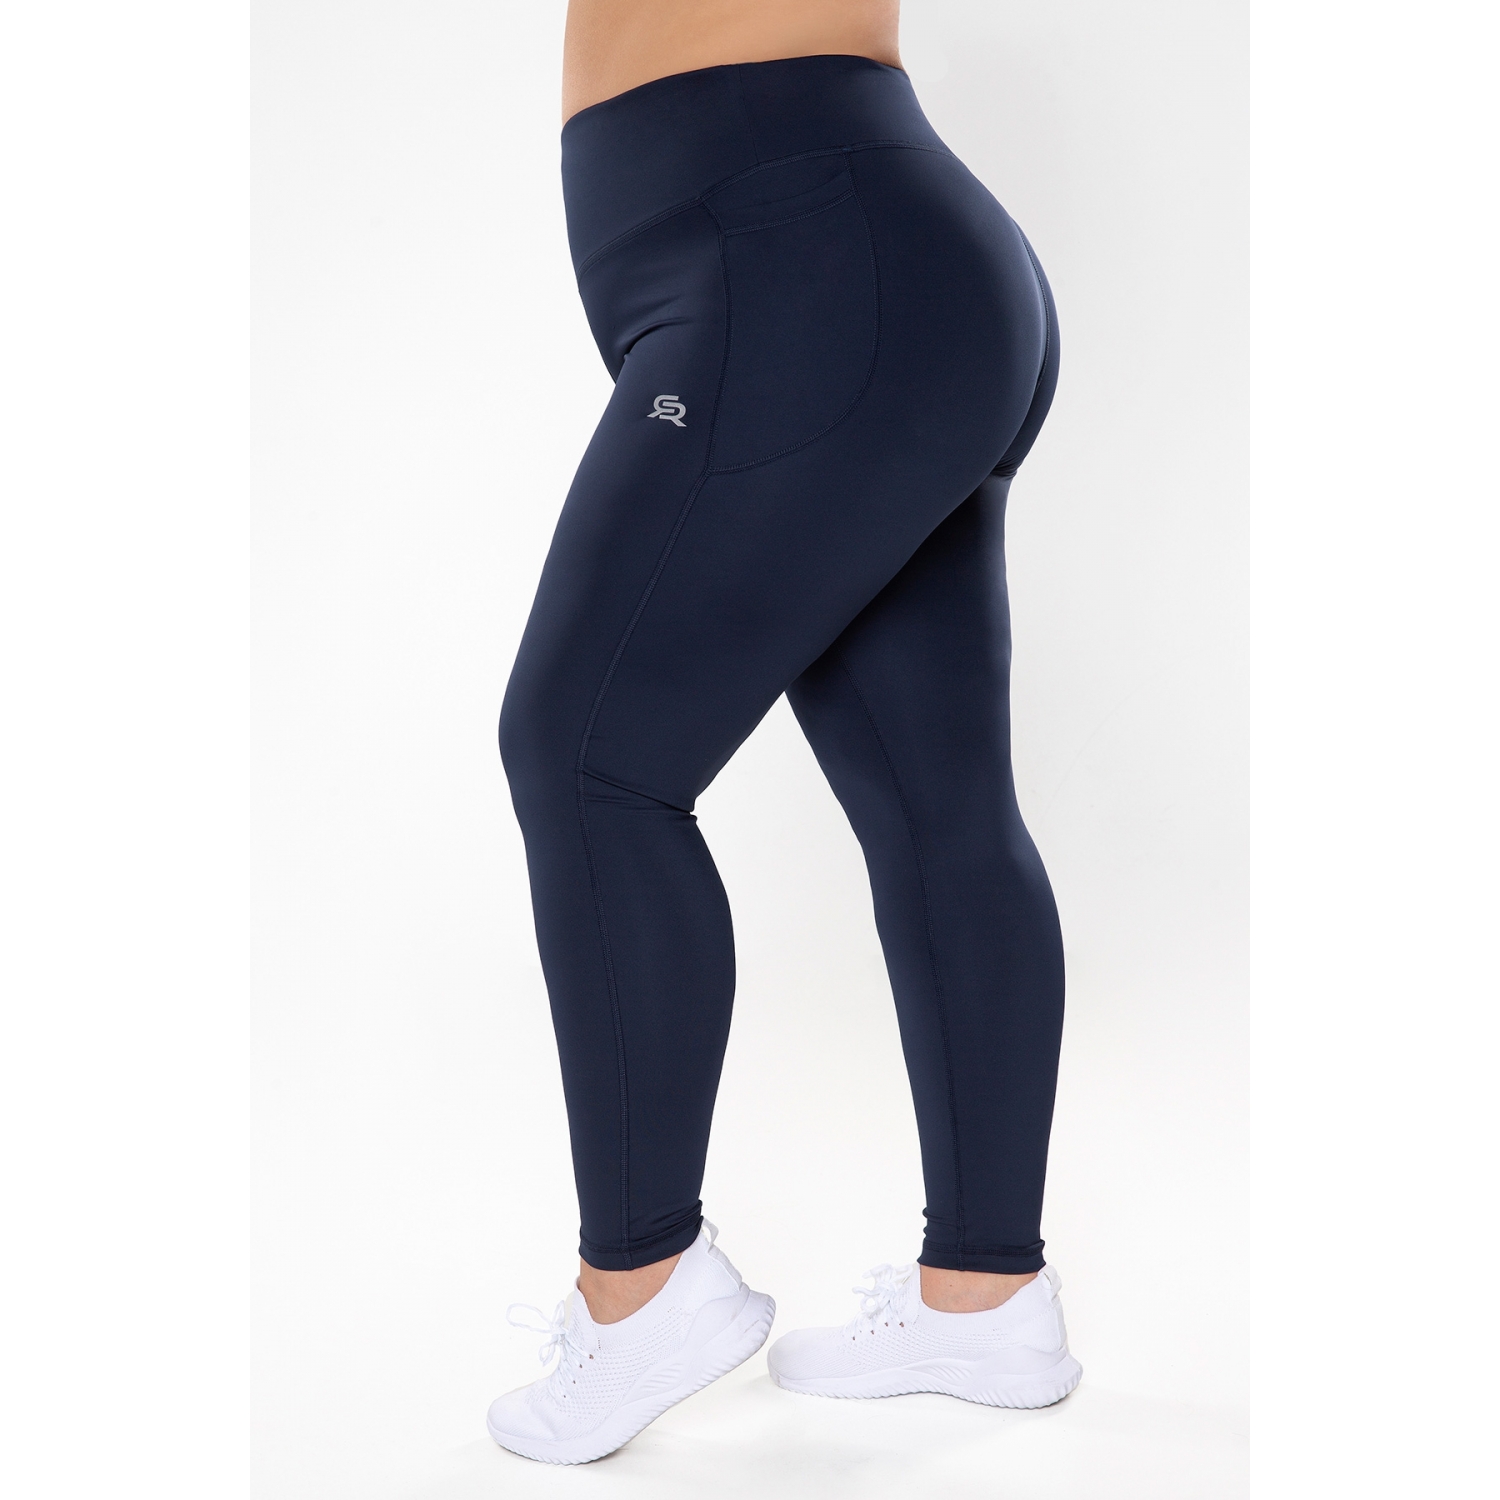 https://roughradical.com.pl/6185-full_product/women-s-leggings-optimal-plus-size.jpg